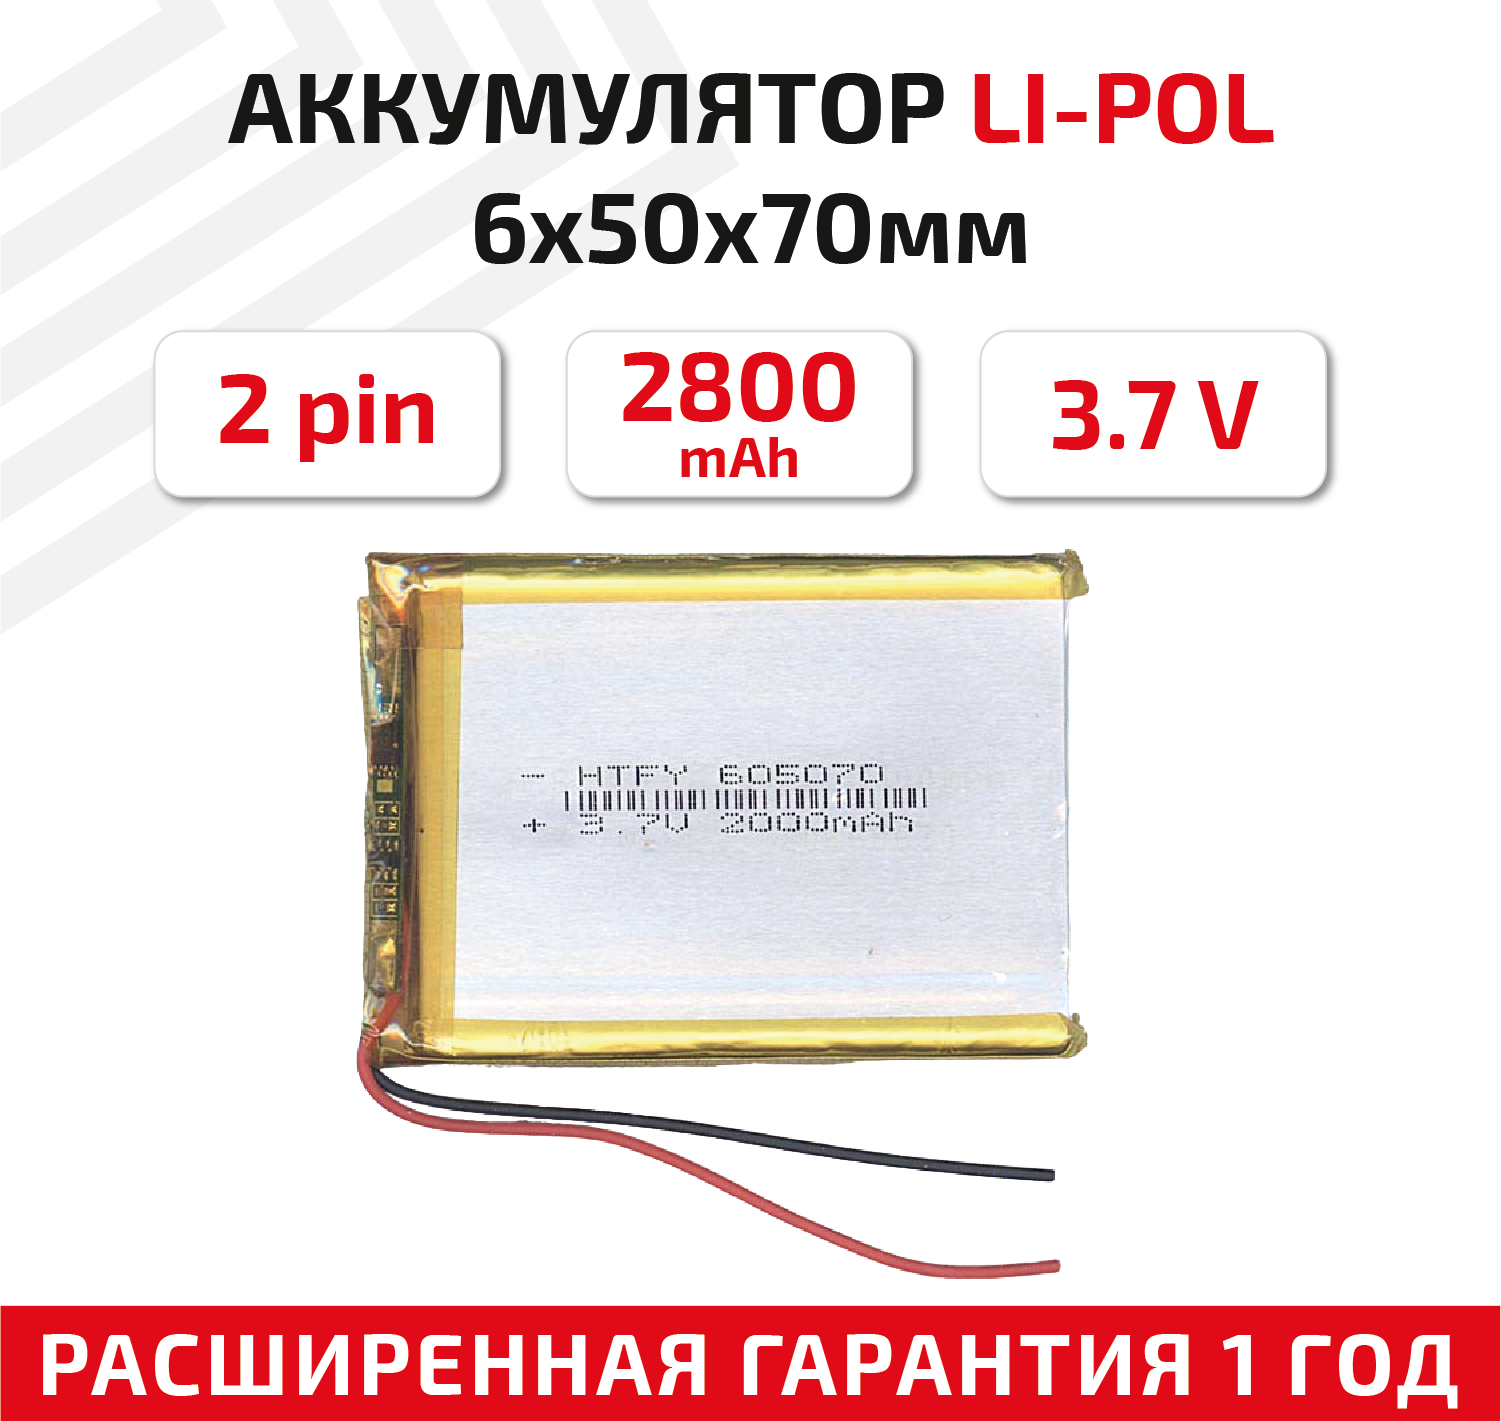 Универсальный аккумулятор (АКБ) для планшета, видеорегистратора и др, 6х50х70мм, 2000мАч, 3.7В, Li-Pol, 2pin (на 2 провода)